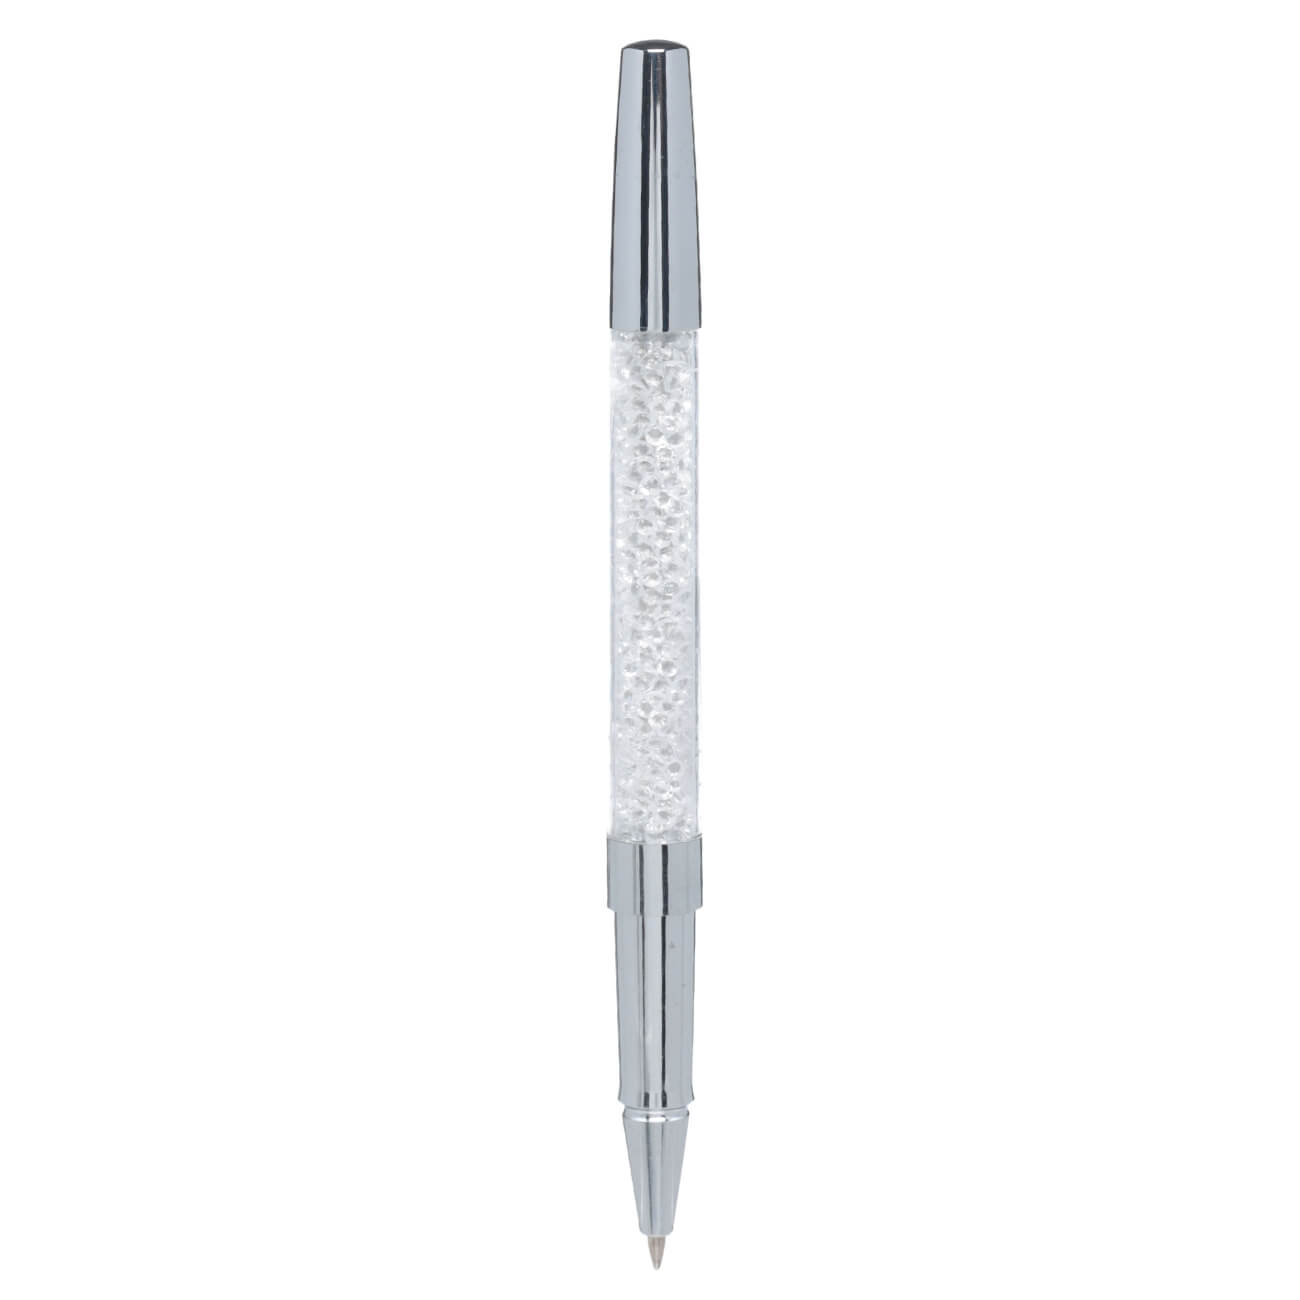 Ручка гелевая, 15 см, сталь, серебристая, Кристаллы, Draw cristal изображение № 1